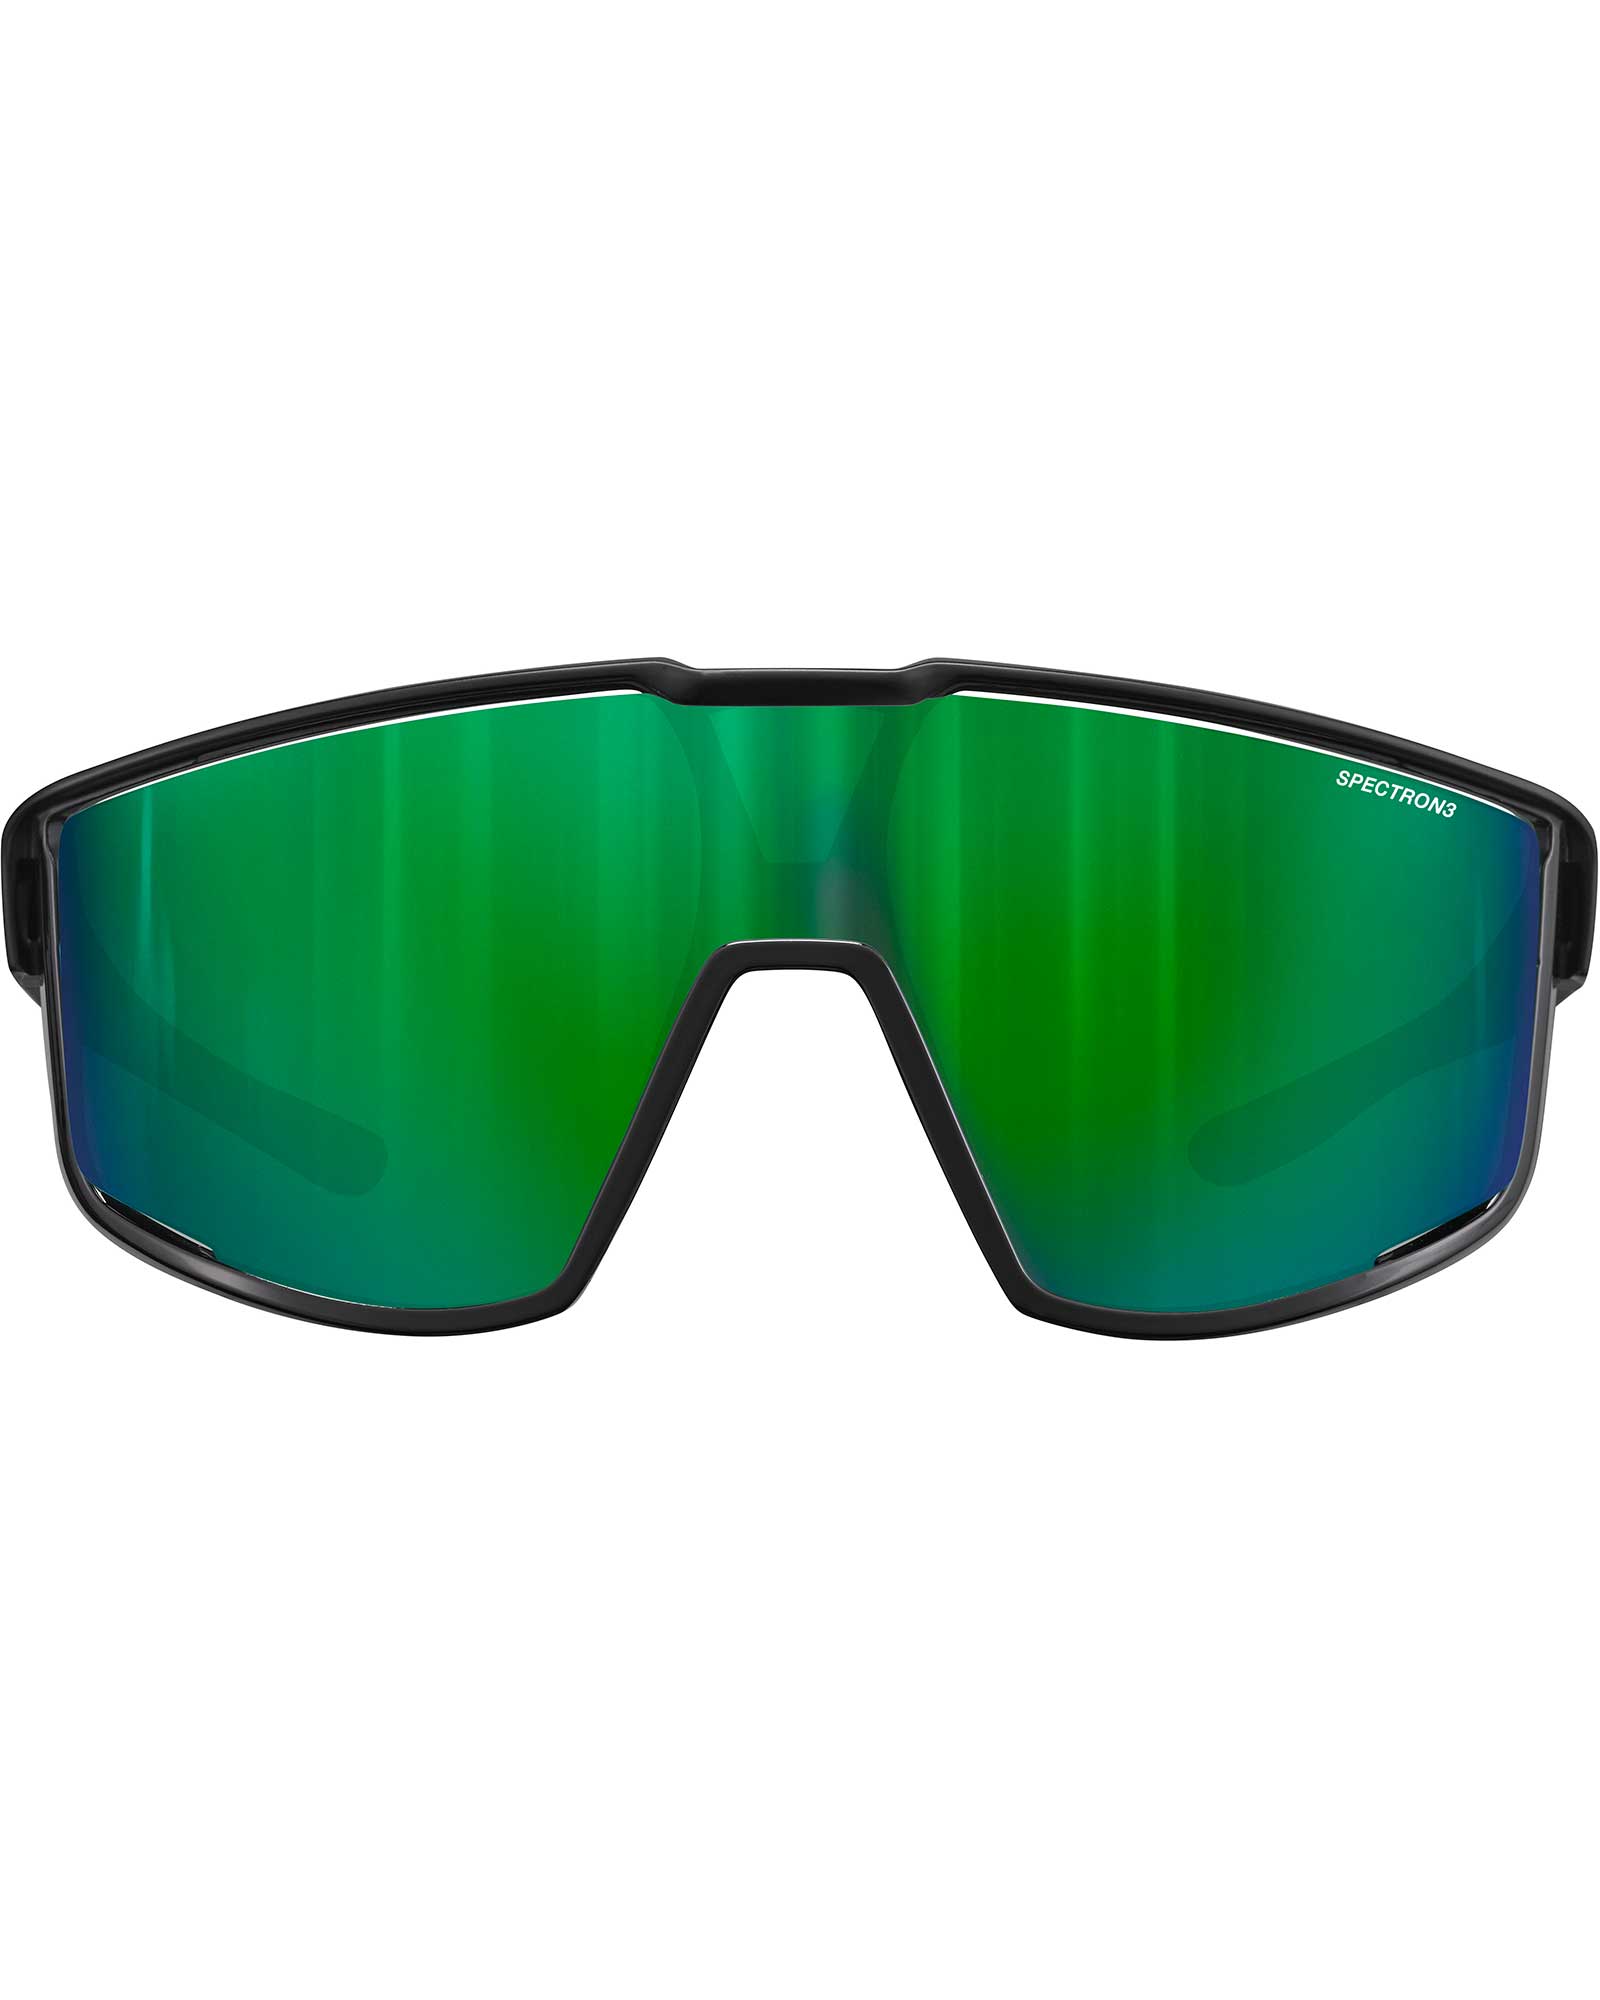 Julbo Fury Shiny Black/Green / Spectron 3 Sunglasses - Shiny Black/Green